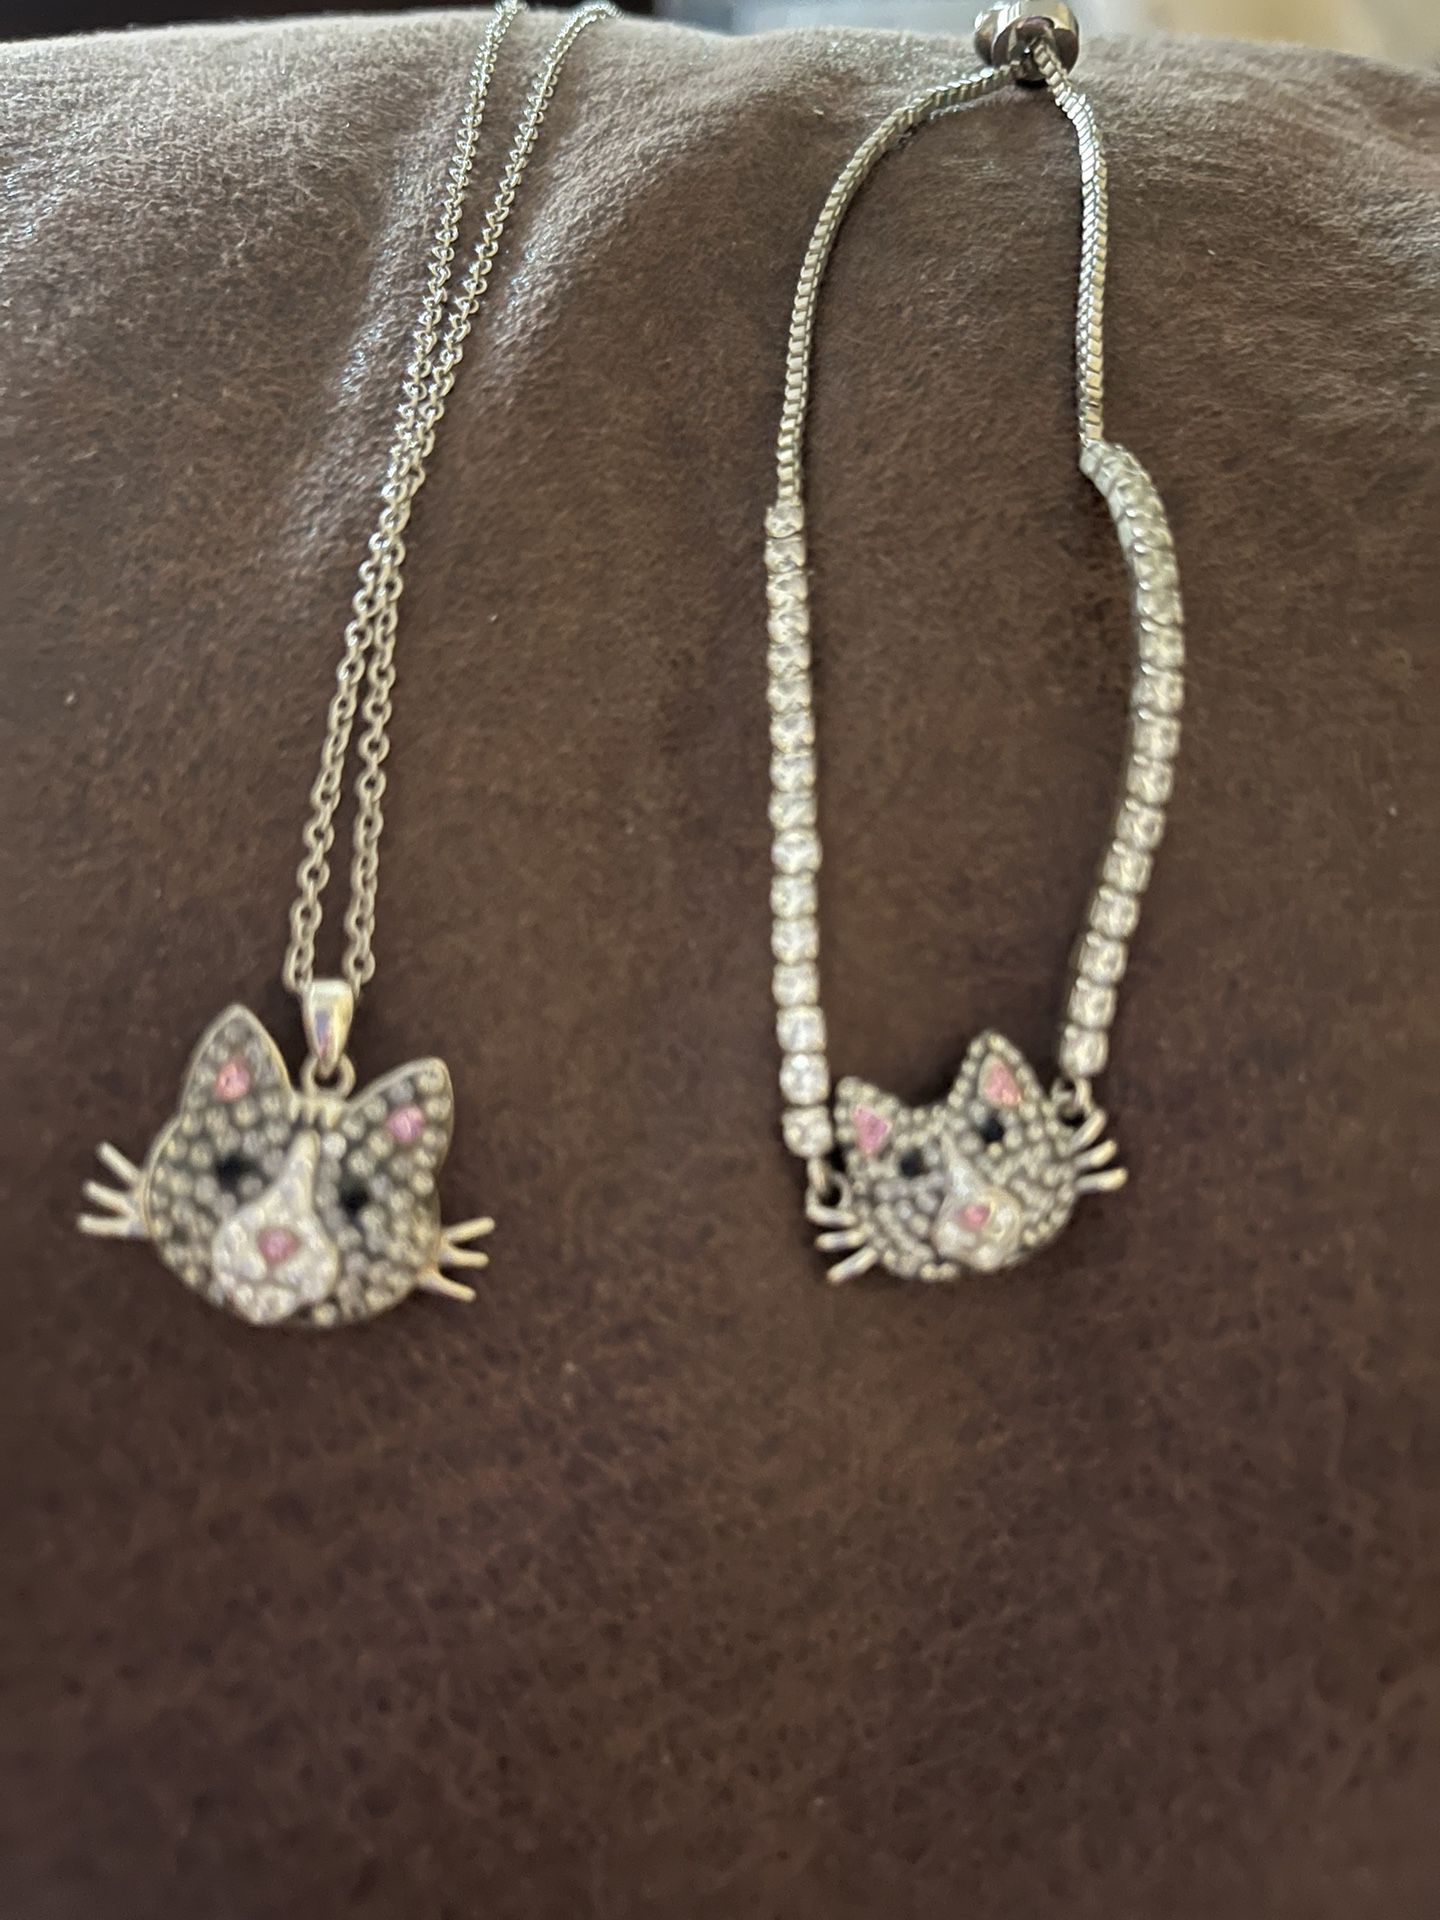 Kitty Necklace And Bracelet Set